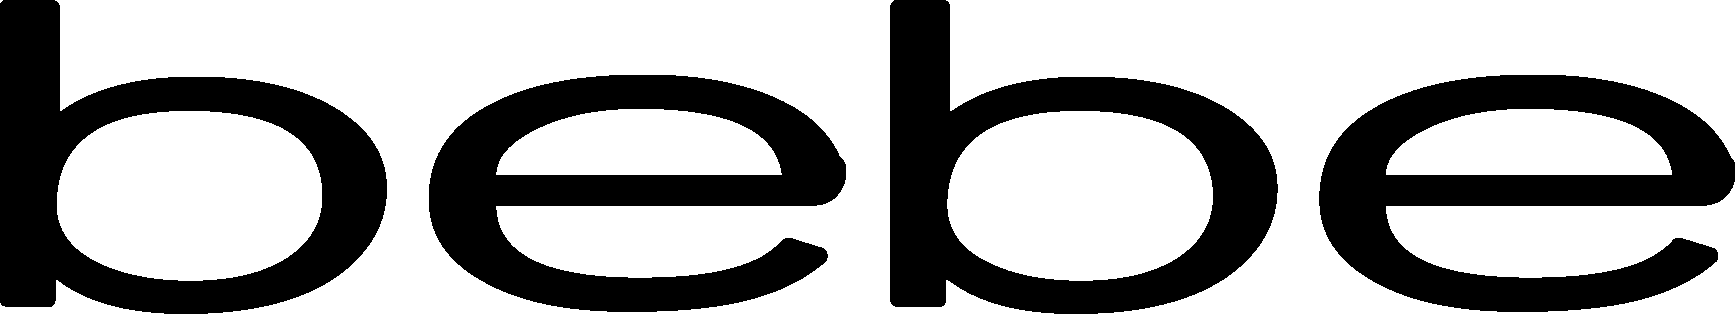 Bebe Logo - PNG Logo Vector Brand Downloads (SVG, EPS)